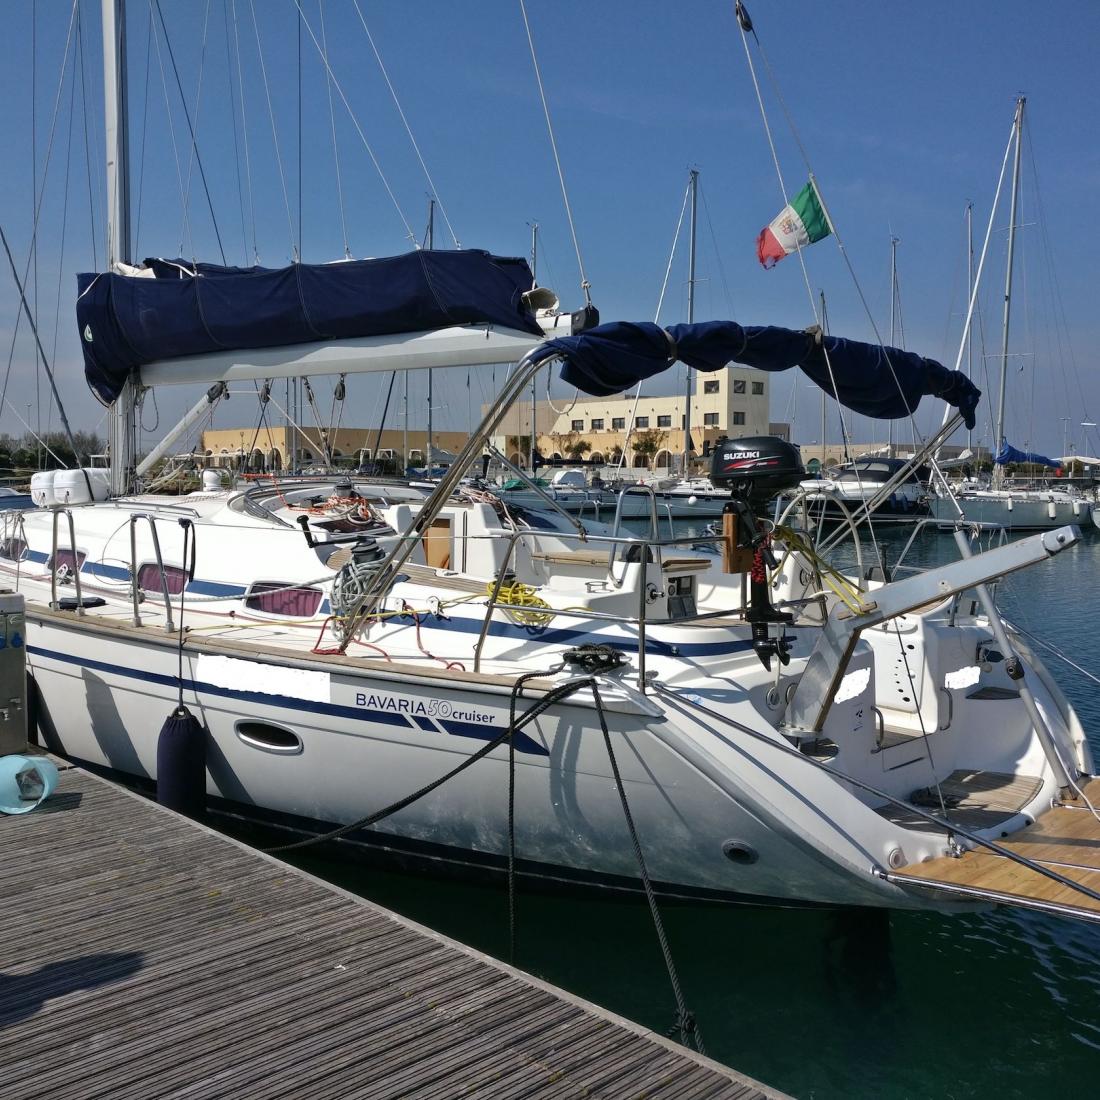 barca bavaria 50 mare puglia legge leuca otranto grecia crocera charter skipper vacanza mare italia